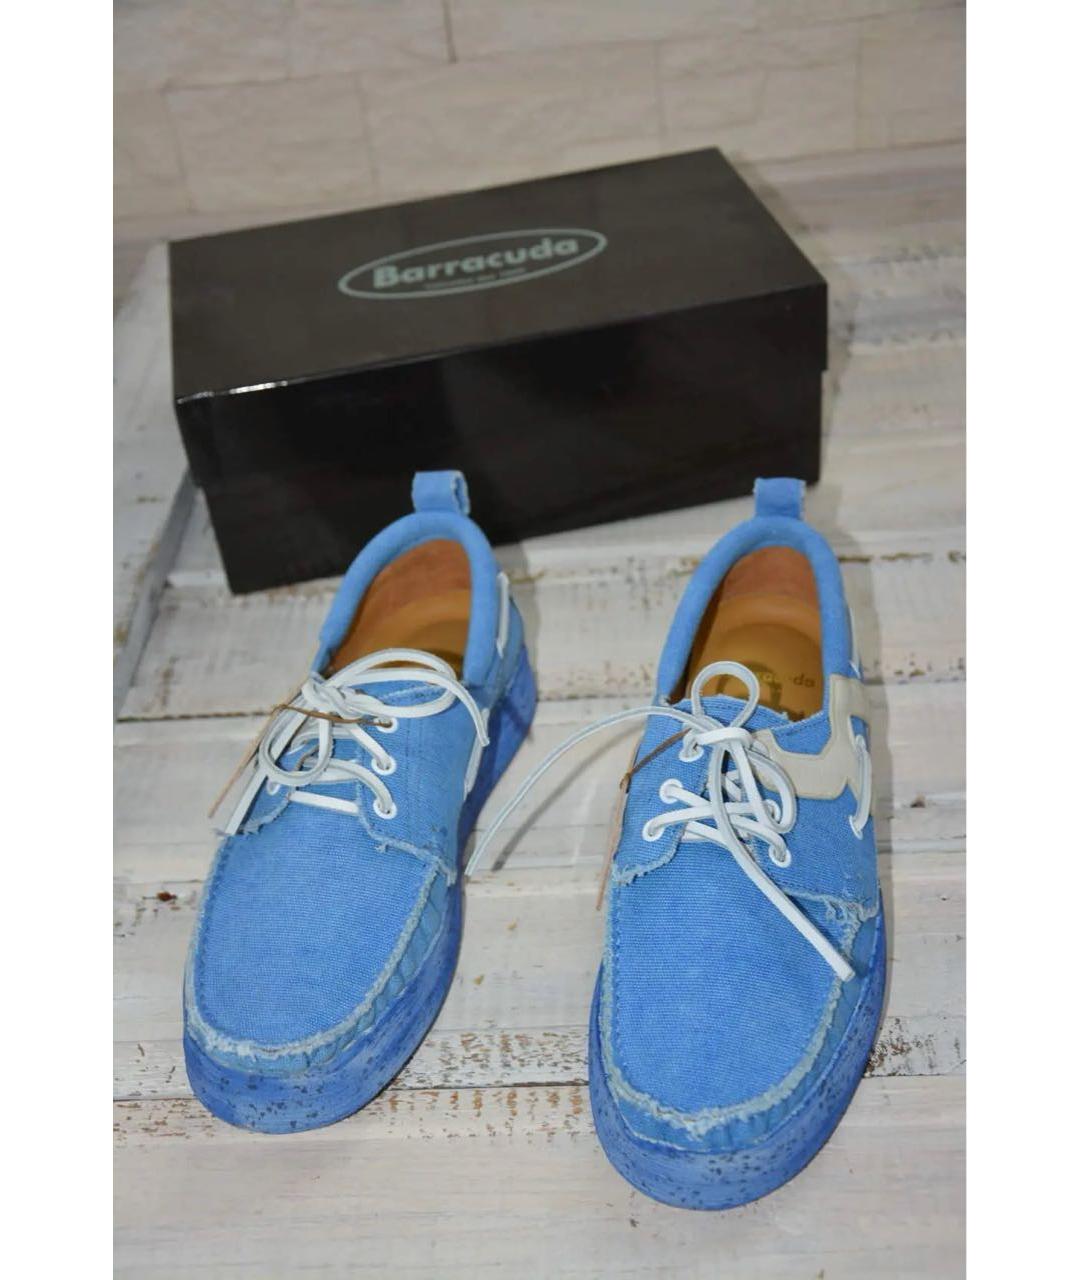 BARRACUDA Голубые текстильные низкие кроссовки / кеды, фото 2